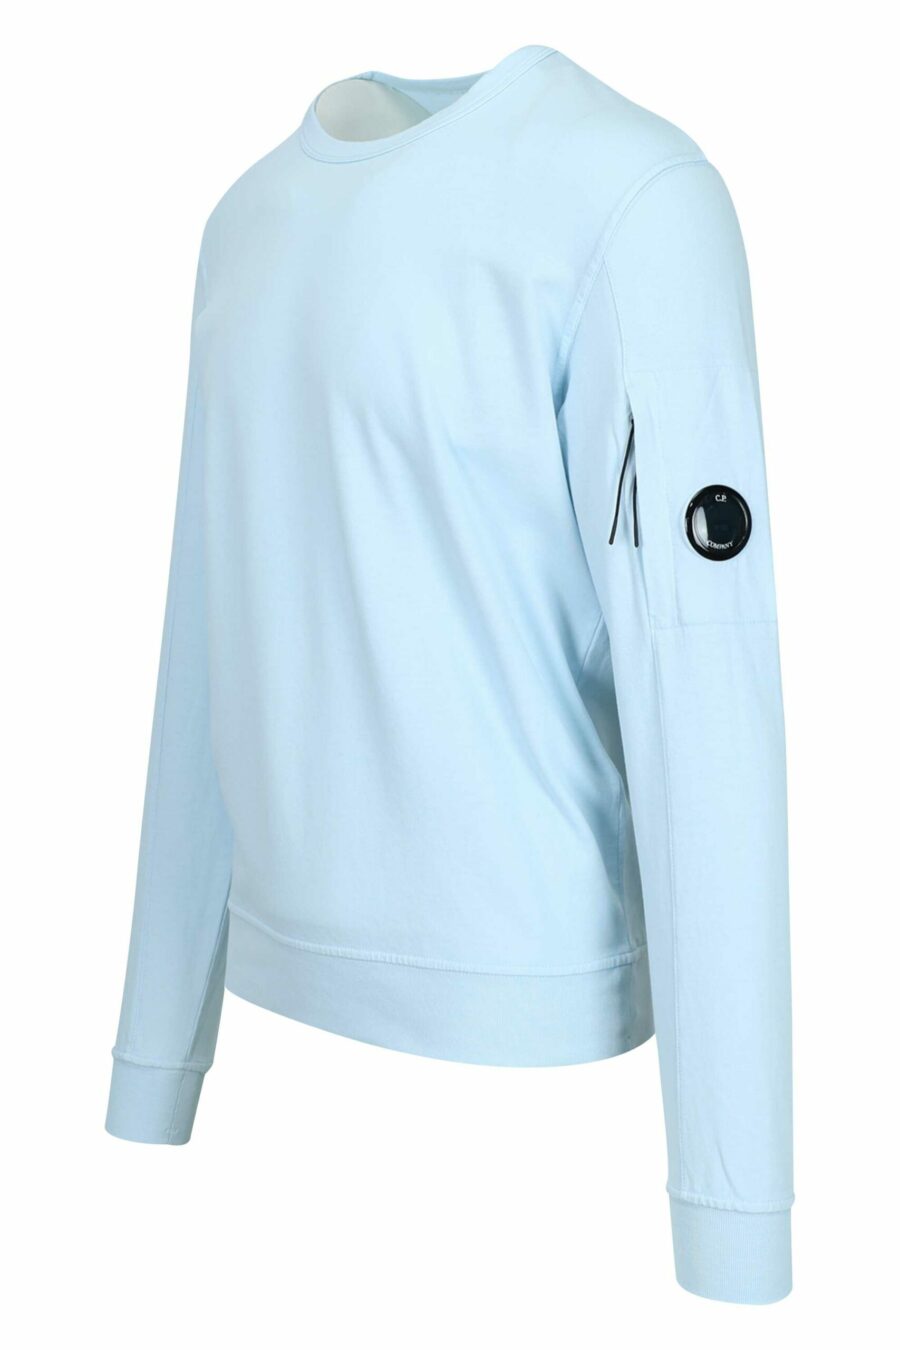 Hellblaues Sweatshirt mit Tasche und Mini-Logo-Linse - 7620943745269 1 skaliert